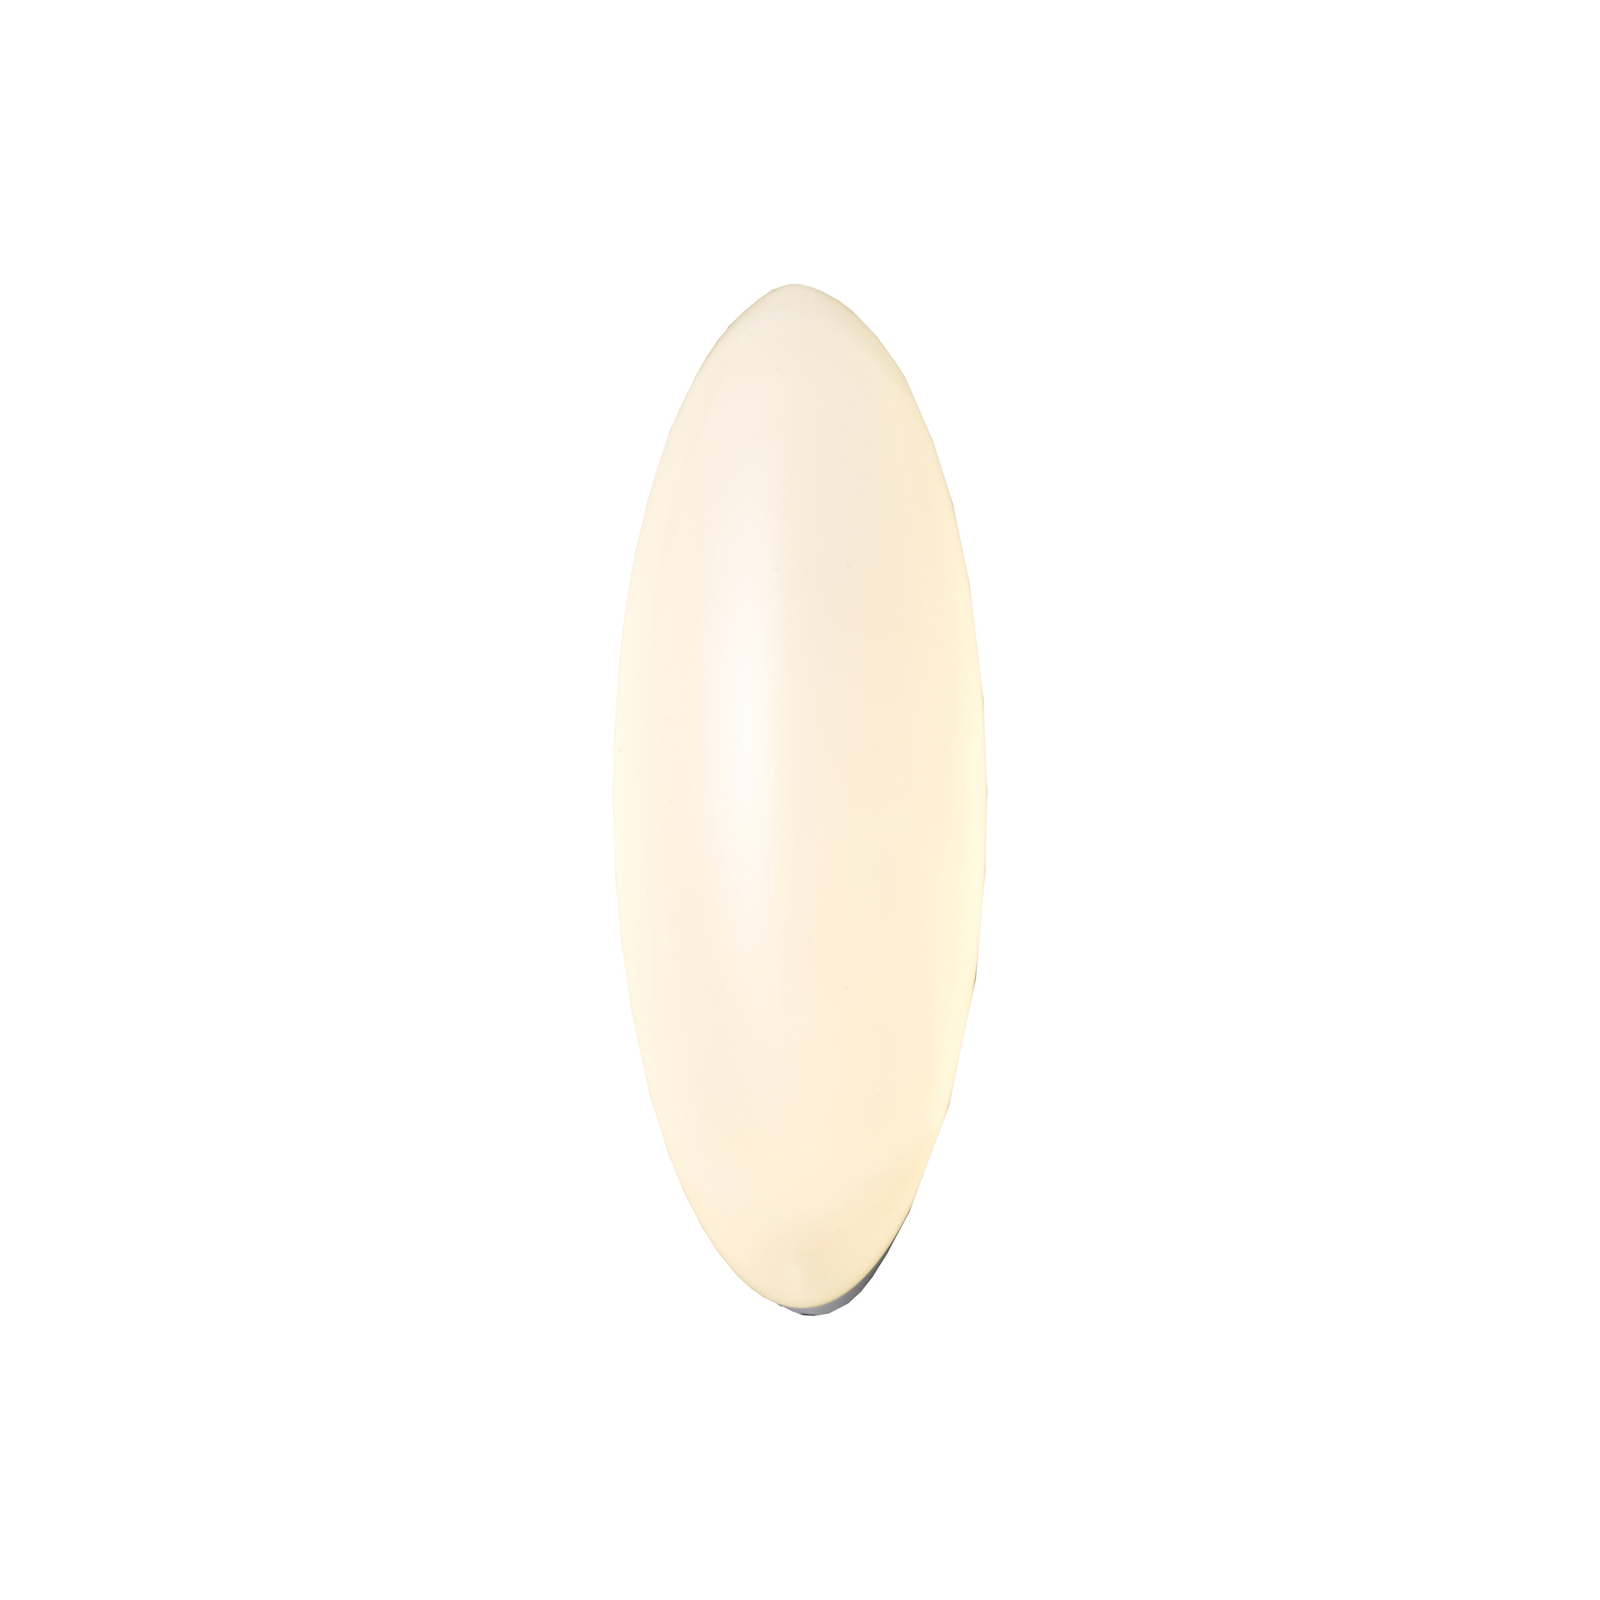 Nástěnné svítidlo Lucande Leihlo LED, oválné, bílé